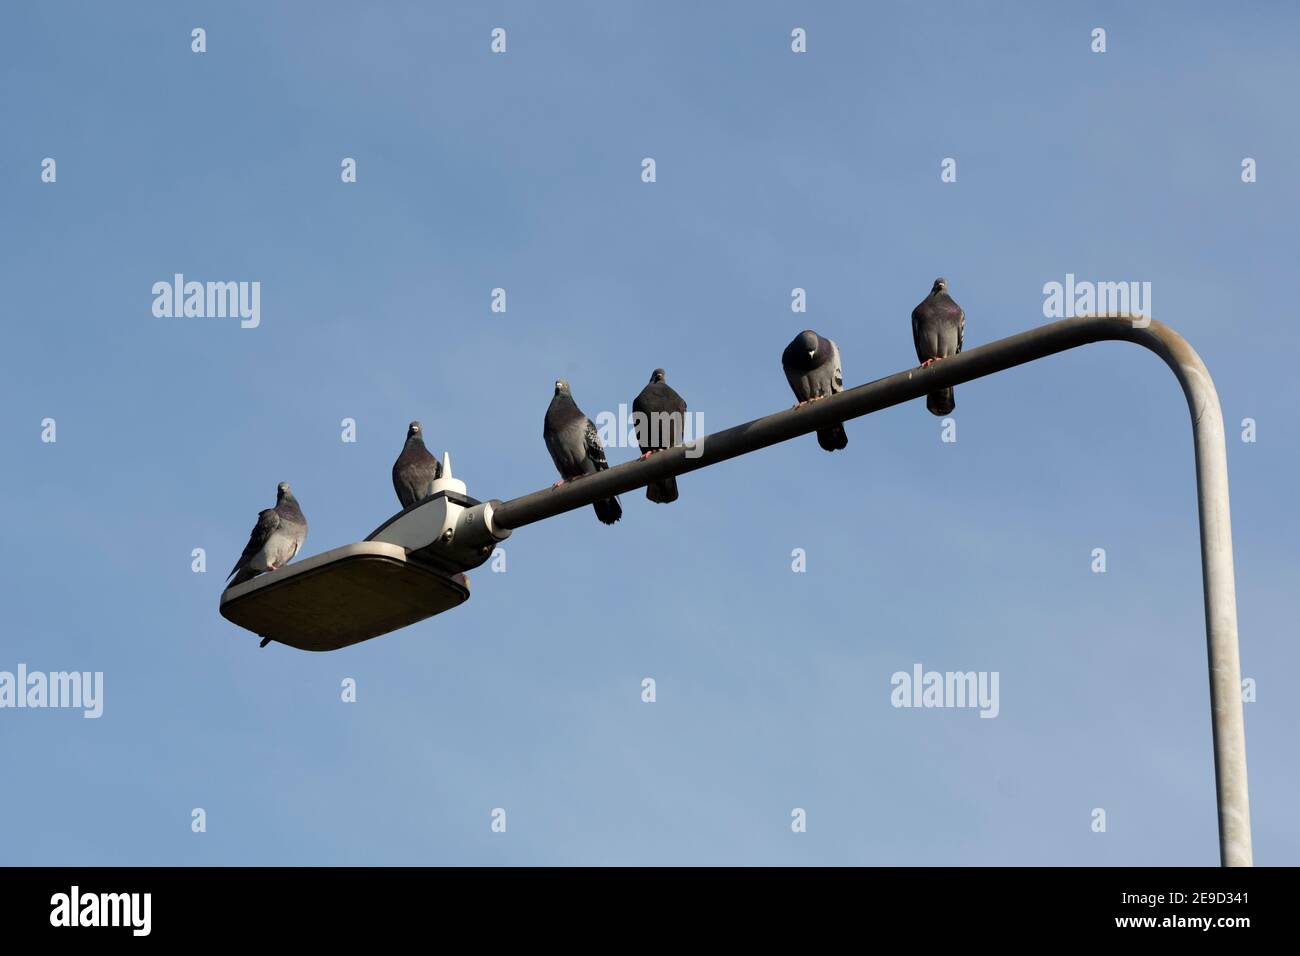 Six pigeons sauvages perchés à la lumière de la rue, Warwickshire, Angleterre, Royaume-Uni Banque D'Images